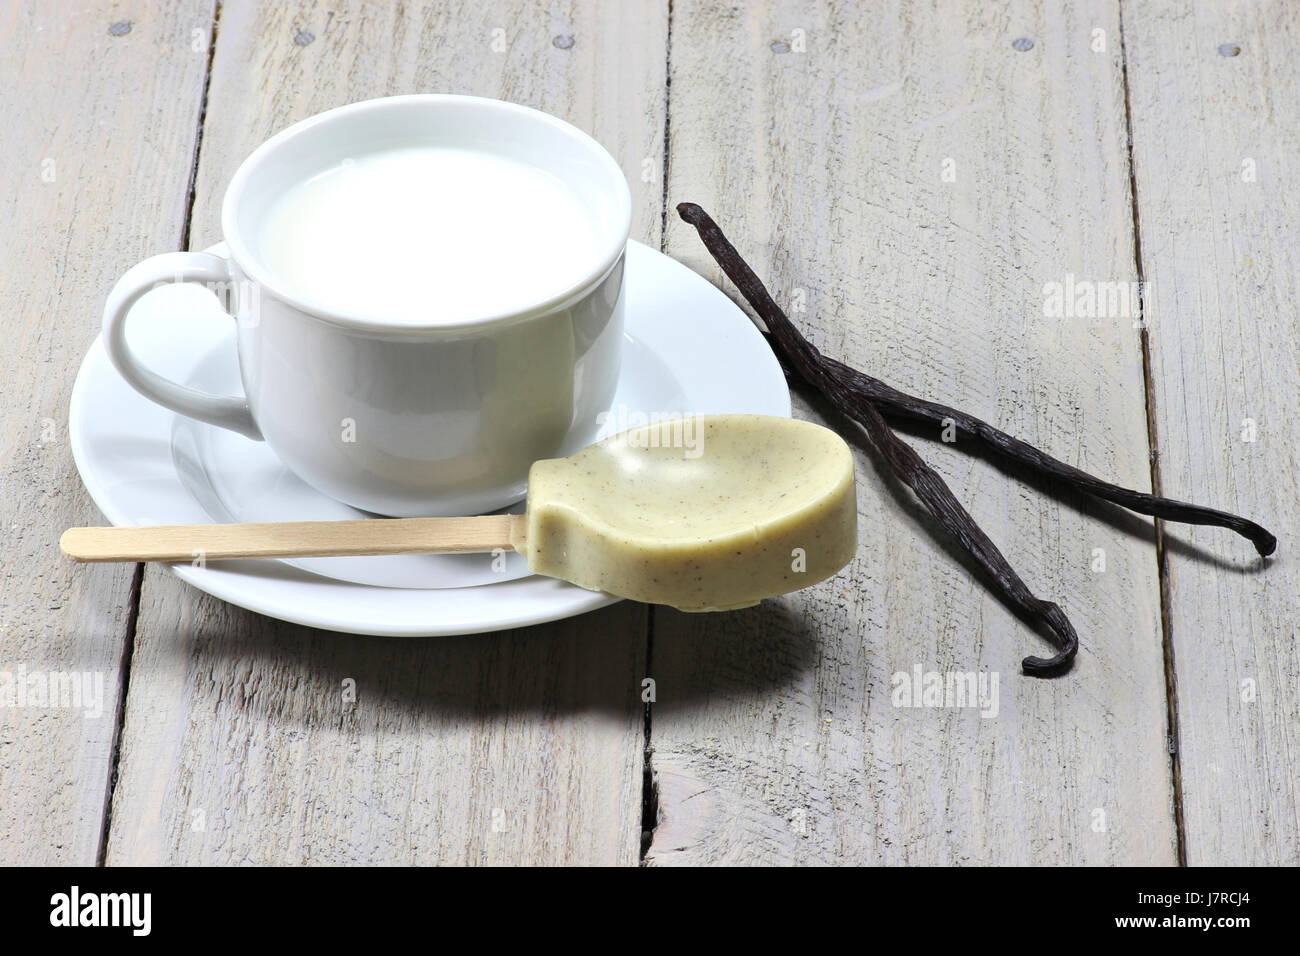 Milch, vorbereitet für eine heiße Schokolade mit Vanille-Geschmack Stockfoto